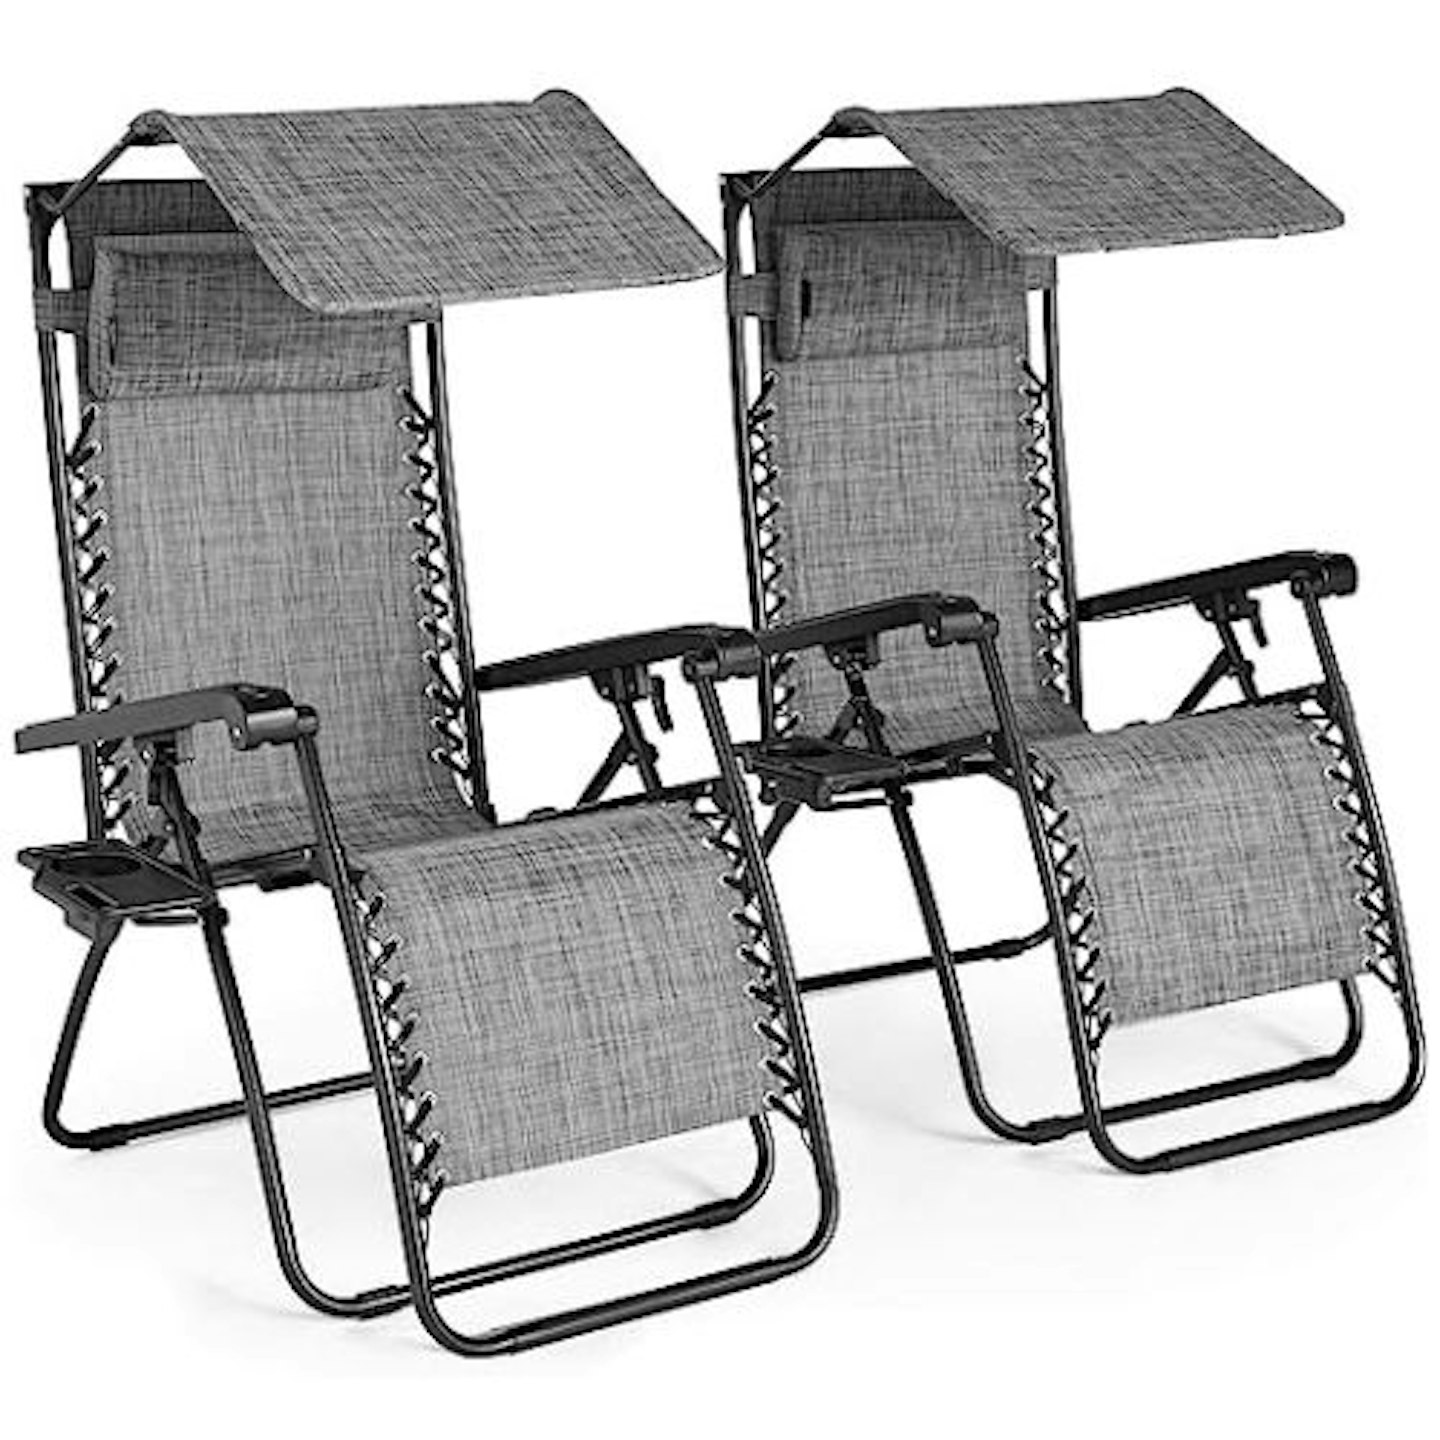 VonHaus Zero Gravity Chairs